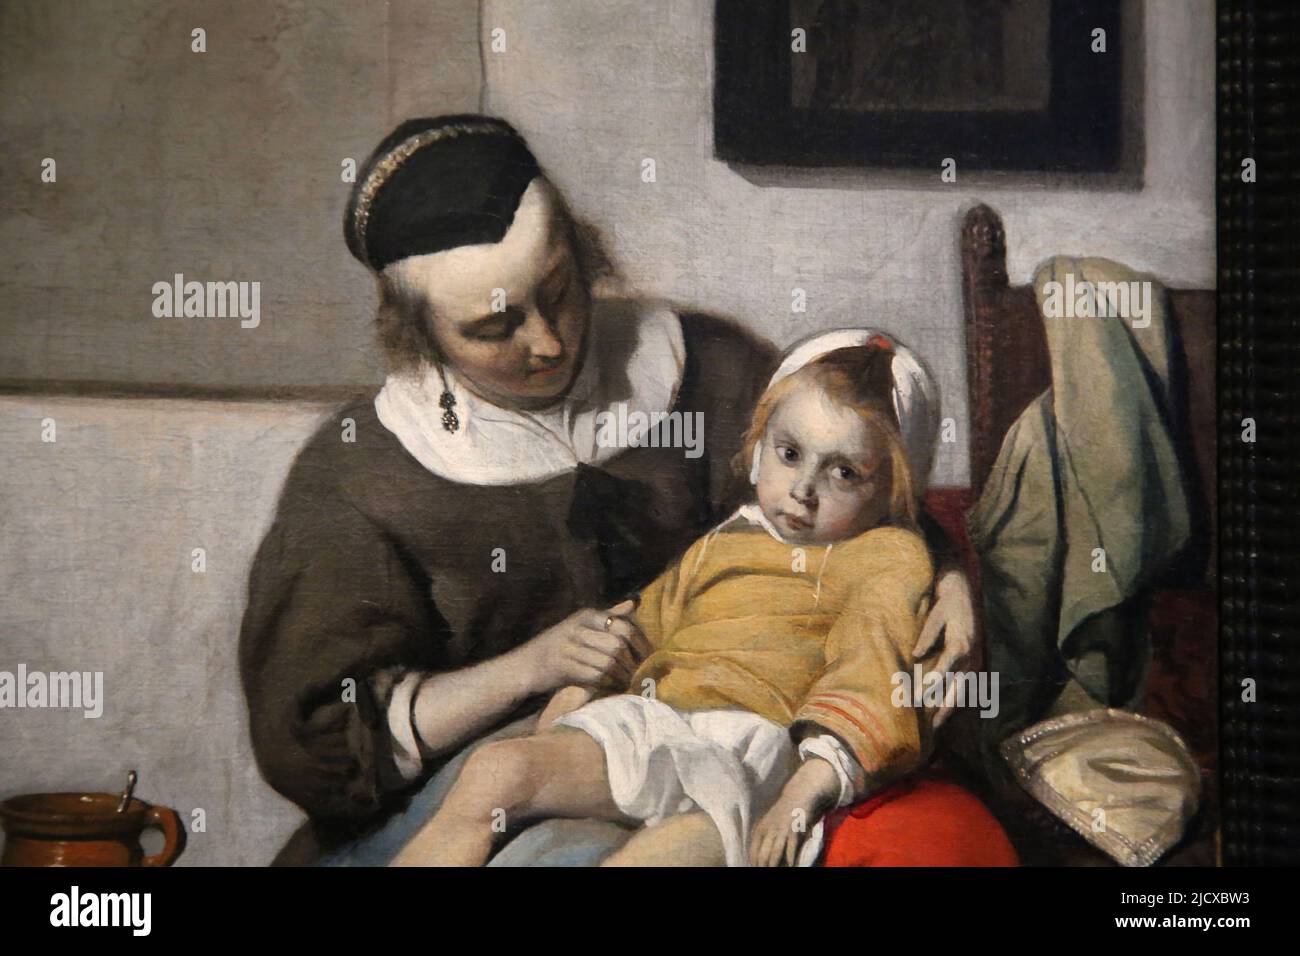 L'enfant malade par Gabriel Metsu (1629-1667). Huile sur toile, c. 1664-1666. Détails. Rijksmuseum. Amsterdam. Pays-Bas. Banque D'Images